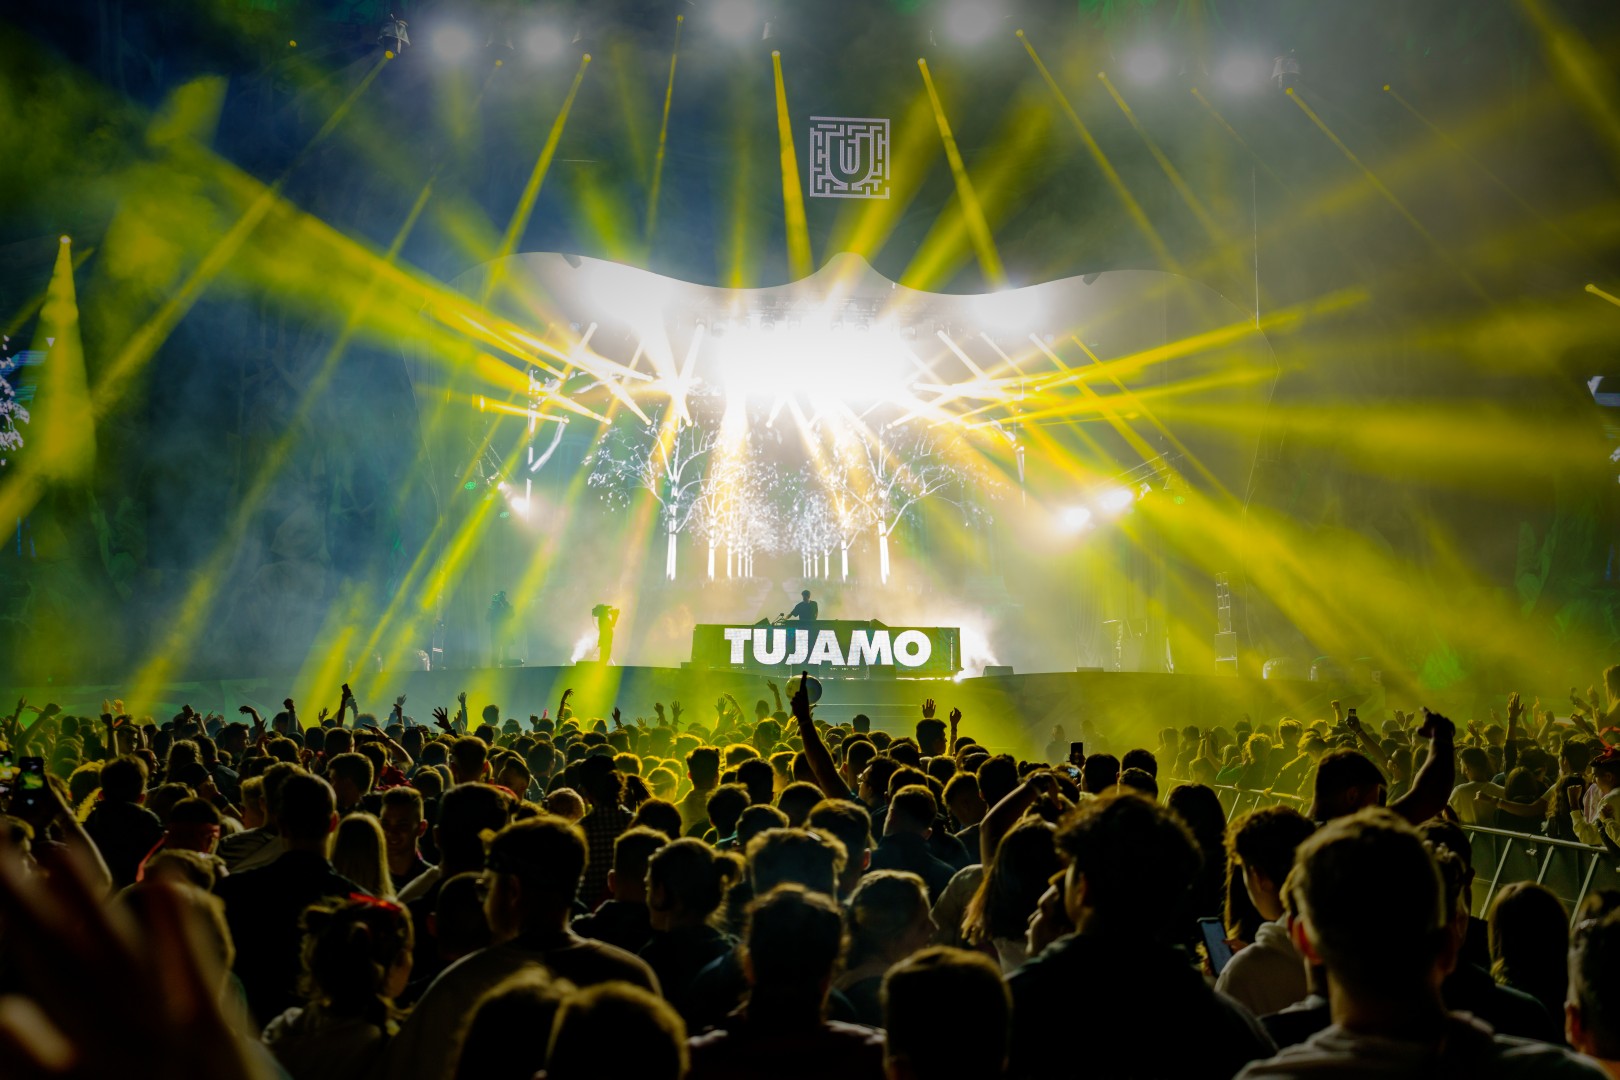 Tujamo at Cluj Arena in Cluj-Napoca on September 9, 2021 (2fa338ac11)